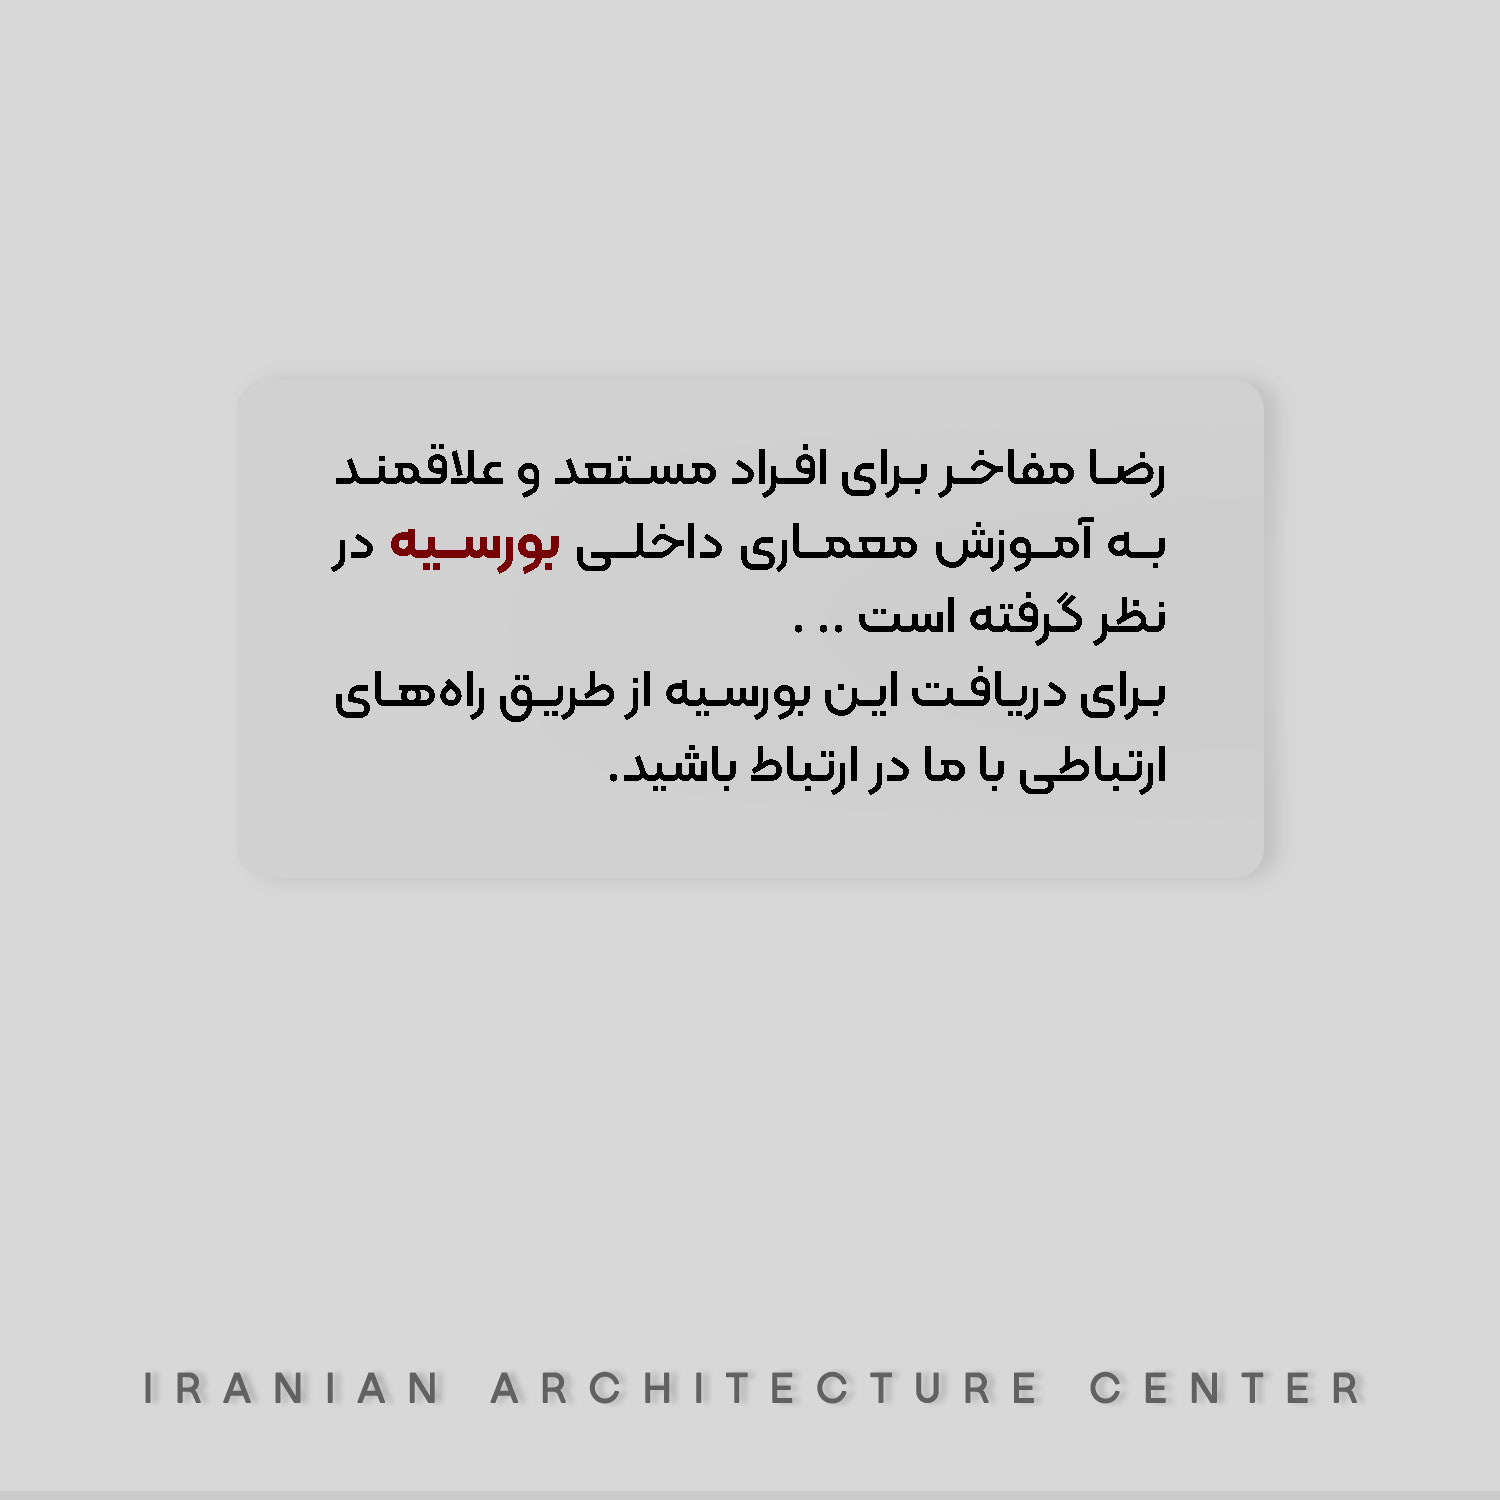 مرکز معماری ایران آموزش نرم افزار معماری آموزش تخصصی معماری دوره عالی معماری داخلی 2785